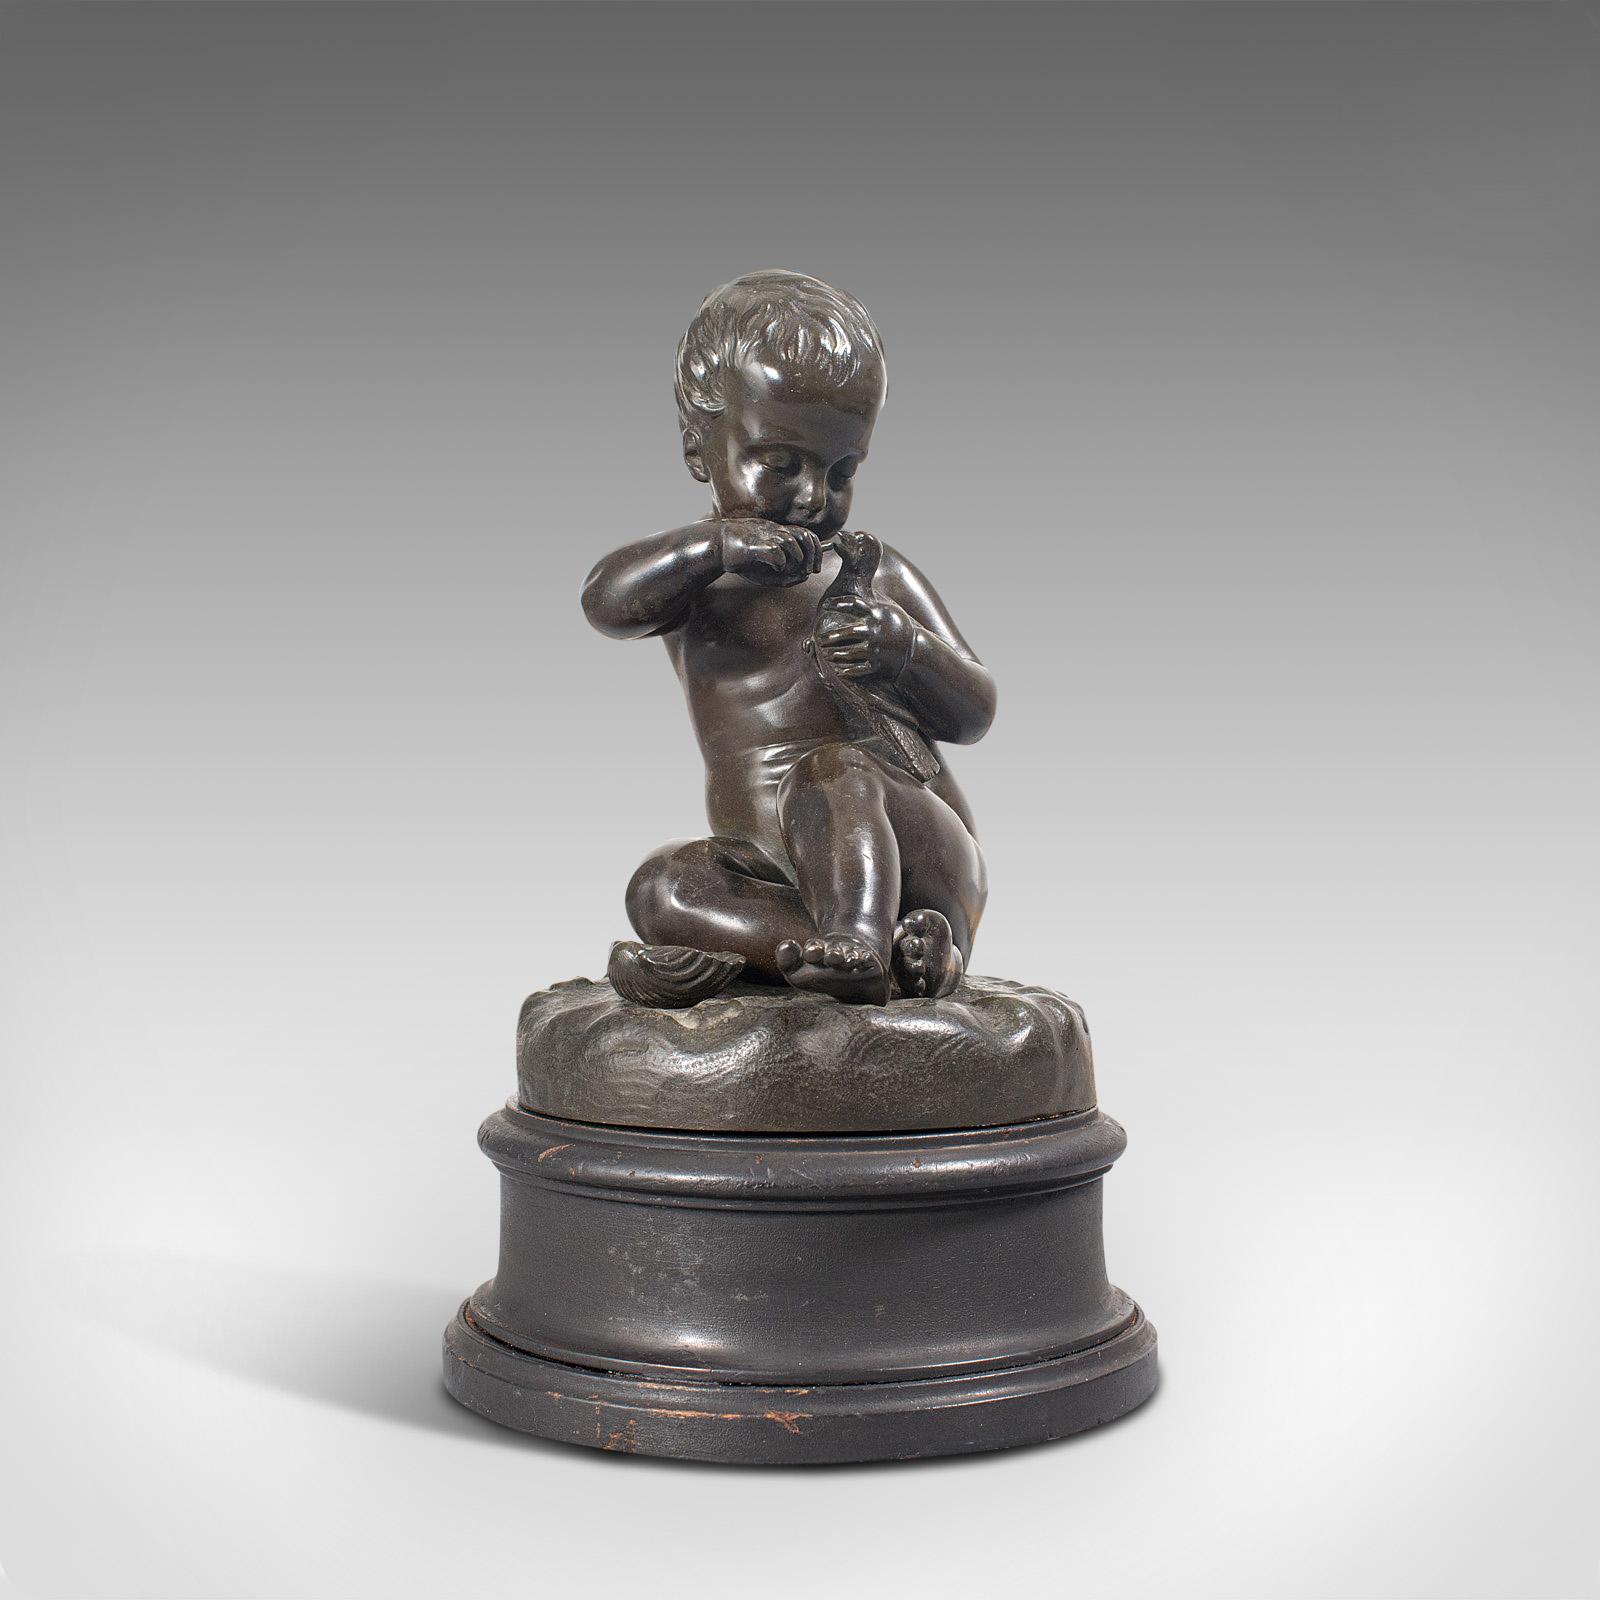 Il s'agit d'une ancienne statue de putto. Figure de chérubin assis en bronze avec un petit oiseau dans la main, datant de la fin du 19e siècle et plus tard, vers 1900.

Un putto charmant avec une qualité fascinante
Affichant une patine vieillie